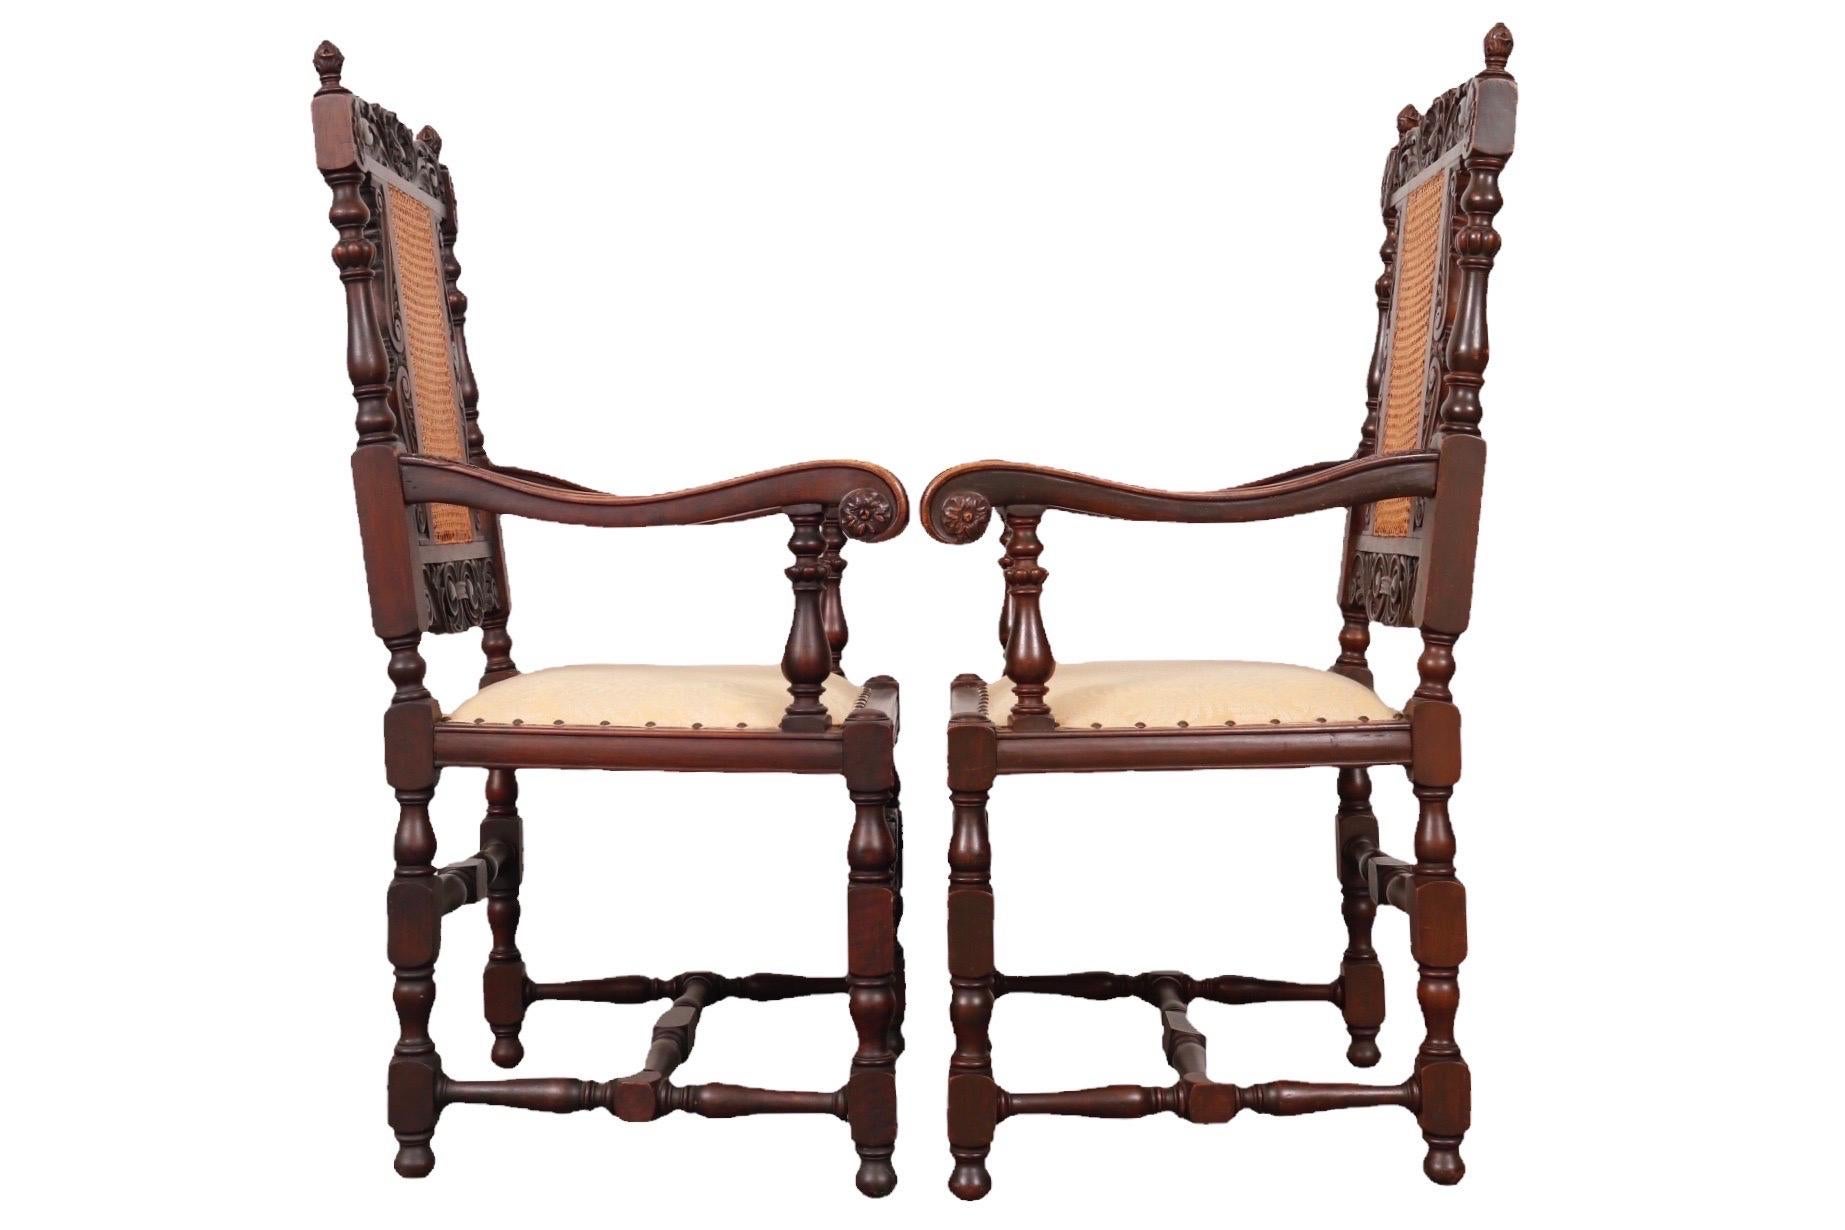 Ein Paar kunstvoll geschnitzte Sessel im jakobinischen Stil. Die hinteren Leisten sind doppelt gerillt und mit verschnörkelten Akanthusblättern auf beiden Seiten einer zentralen Muschel gekrönt. Die quadratischen Sitze sind mit einem hellgelben